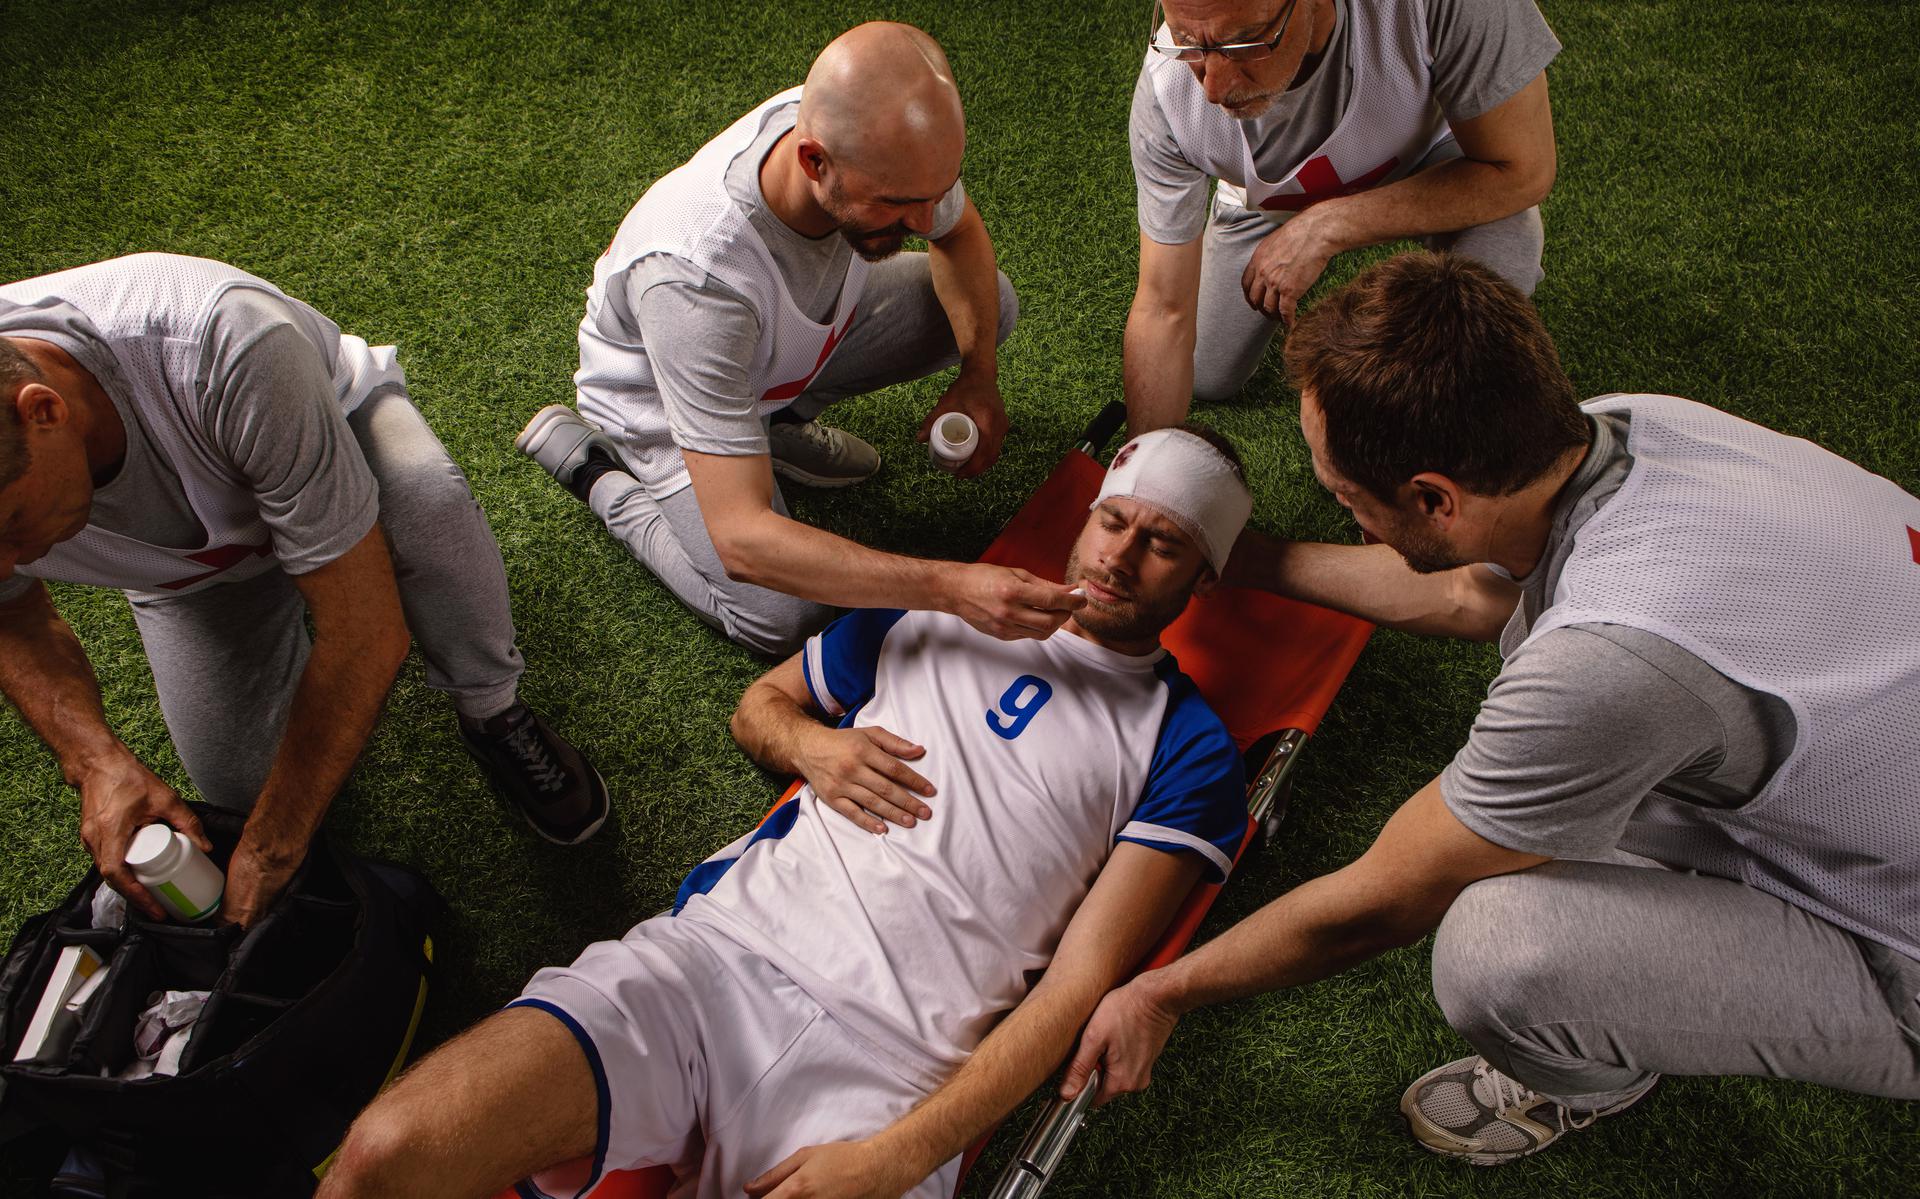 Il sindacato inglese dei calciatori PFA chiede alla UEFA maggiori cure in caso di lesioni alla testa.  “Salute e sicurezza dei giocatori a rischio”